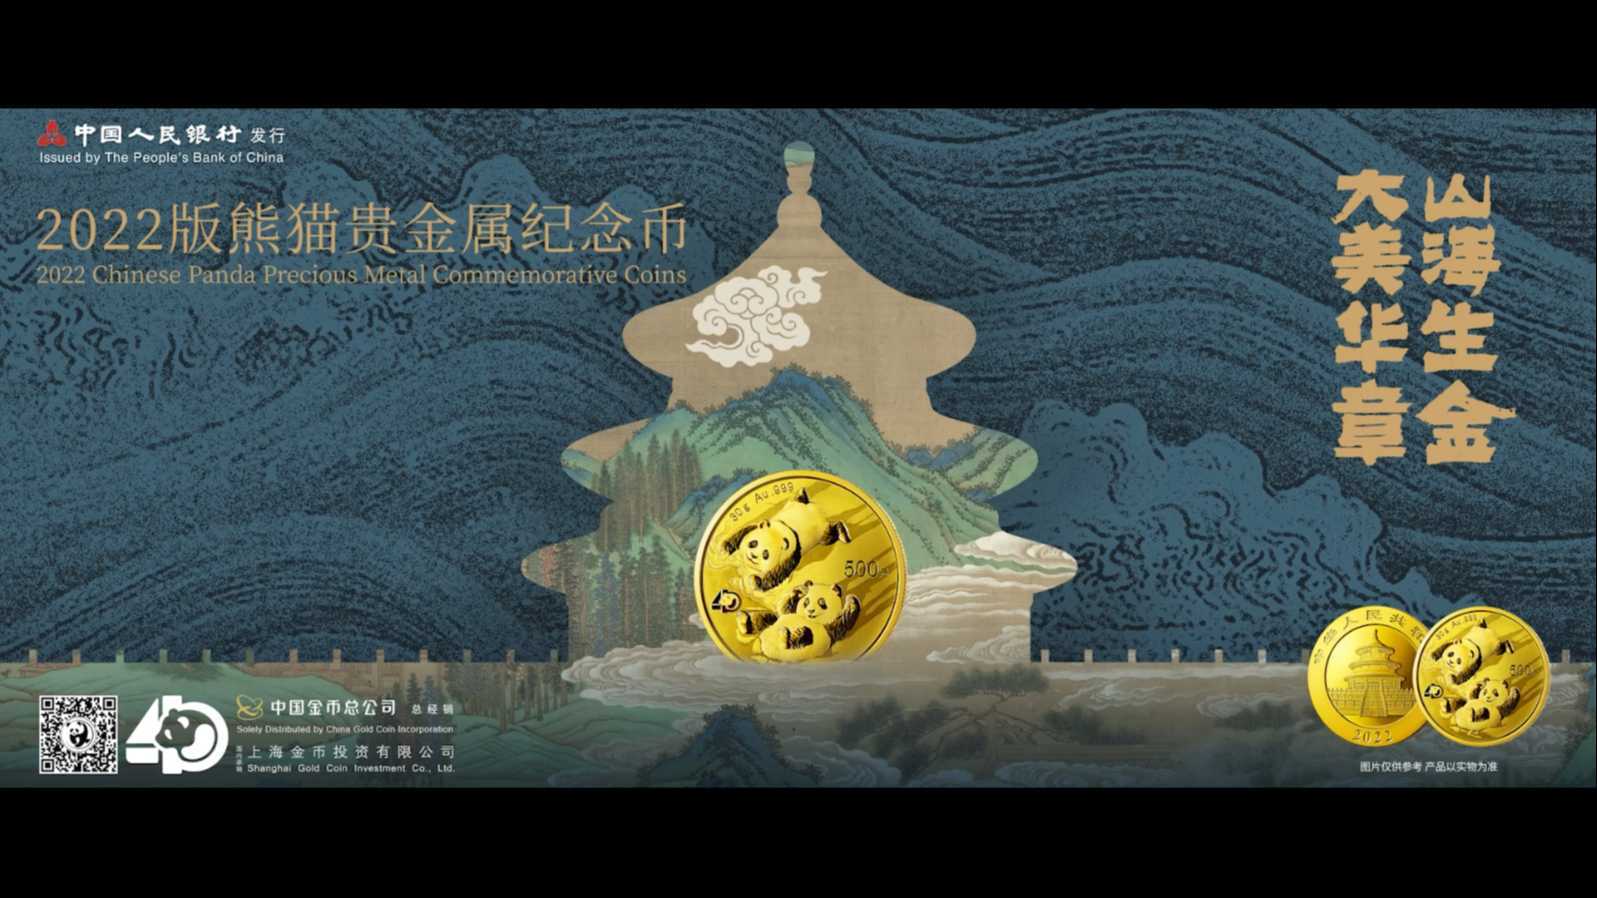 2022版熊猫貴金屬紀念幣宣傳片雙語版